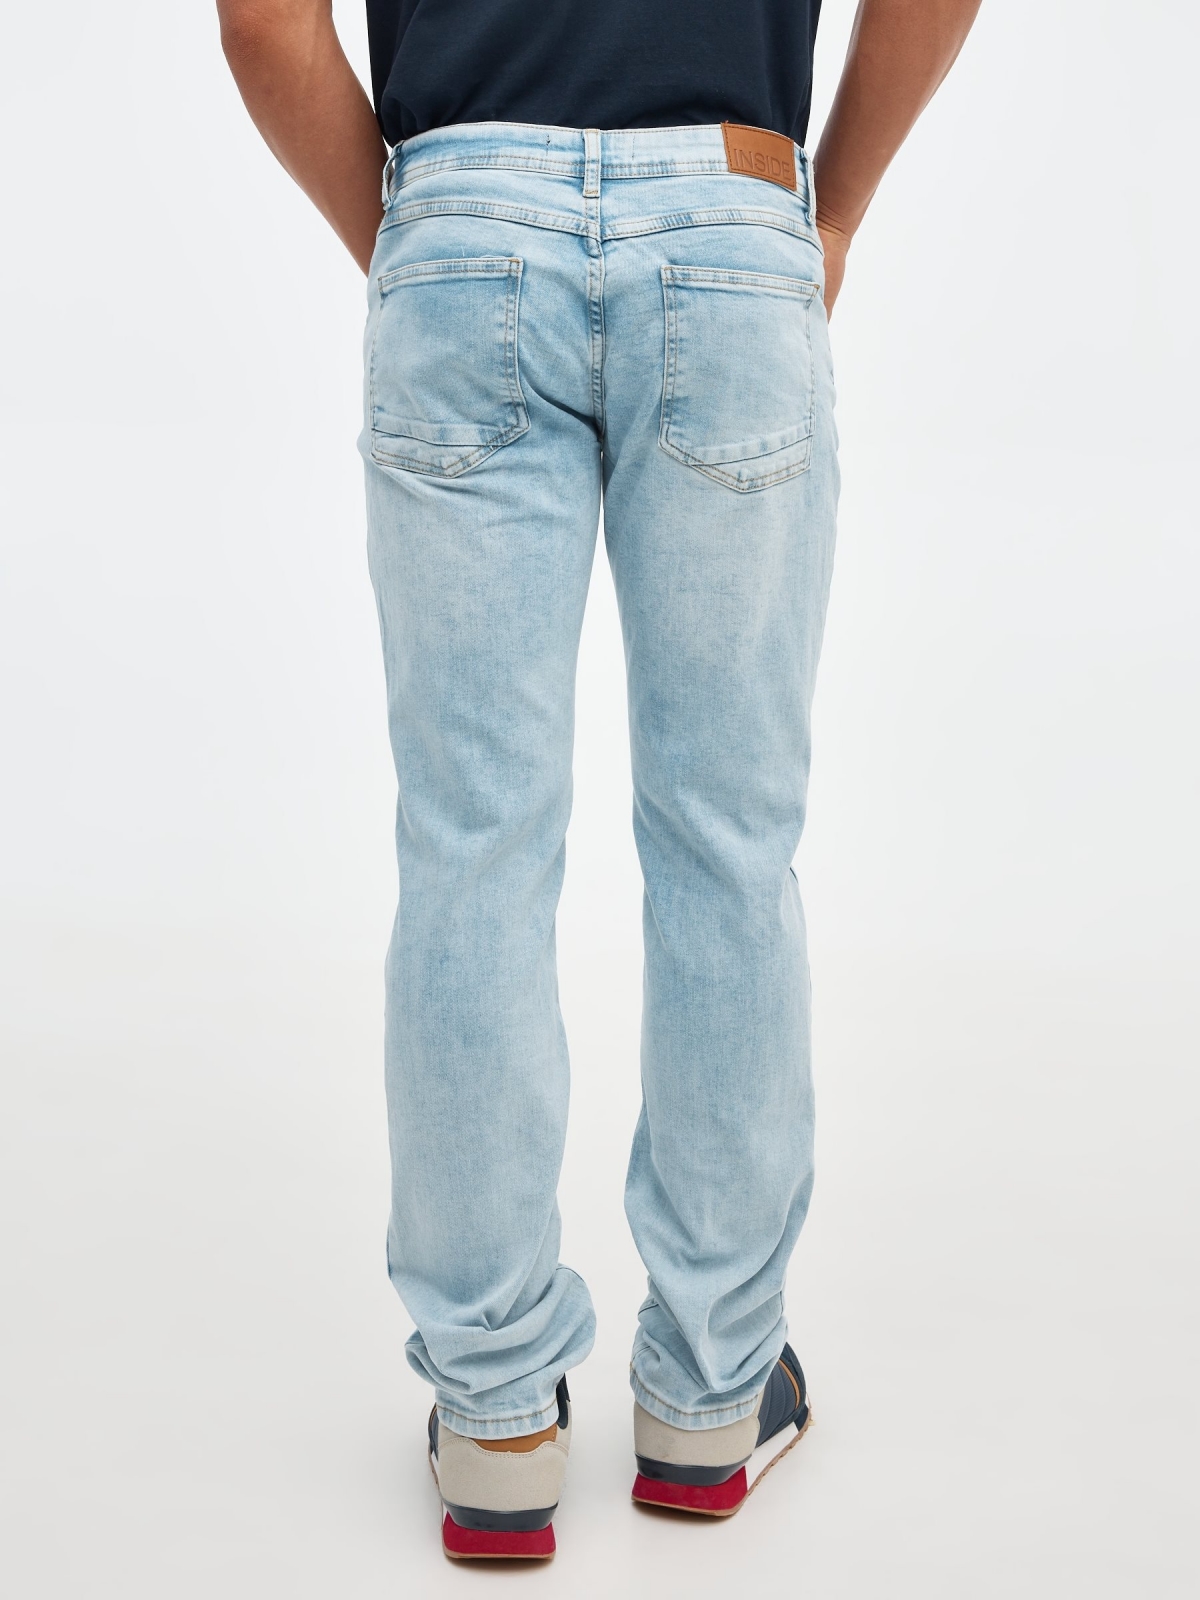 Jeans slim azul desgastados azul vista general frontal